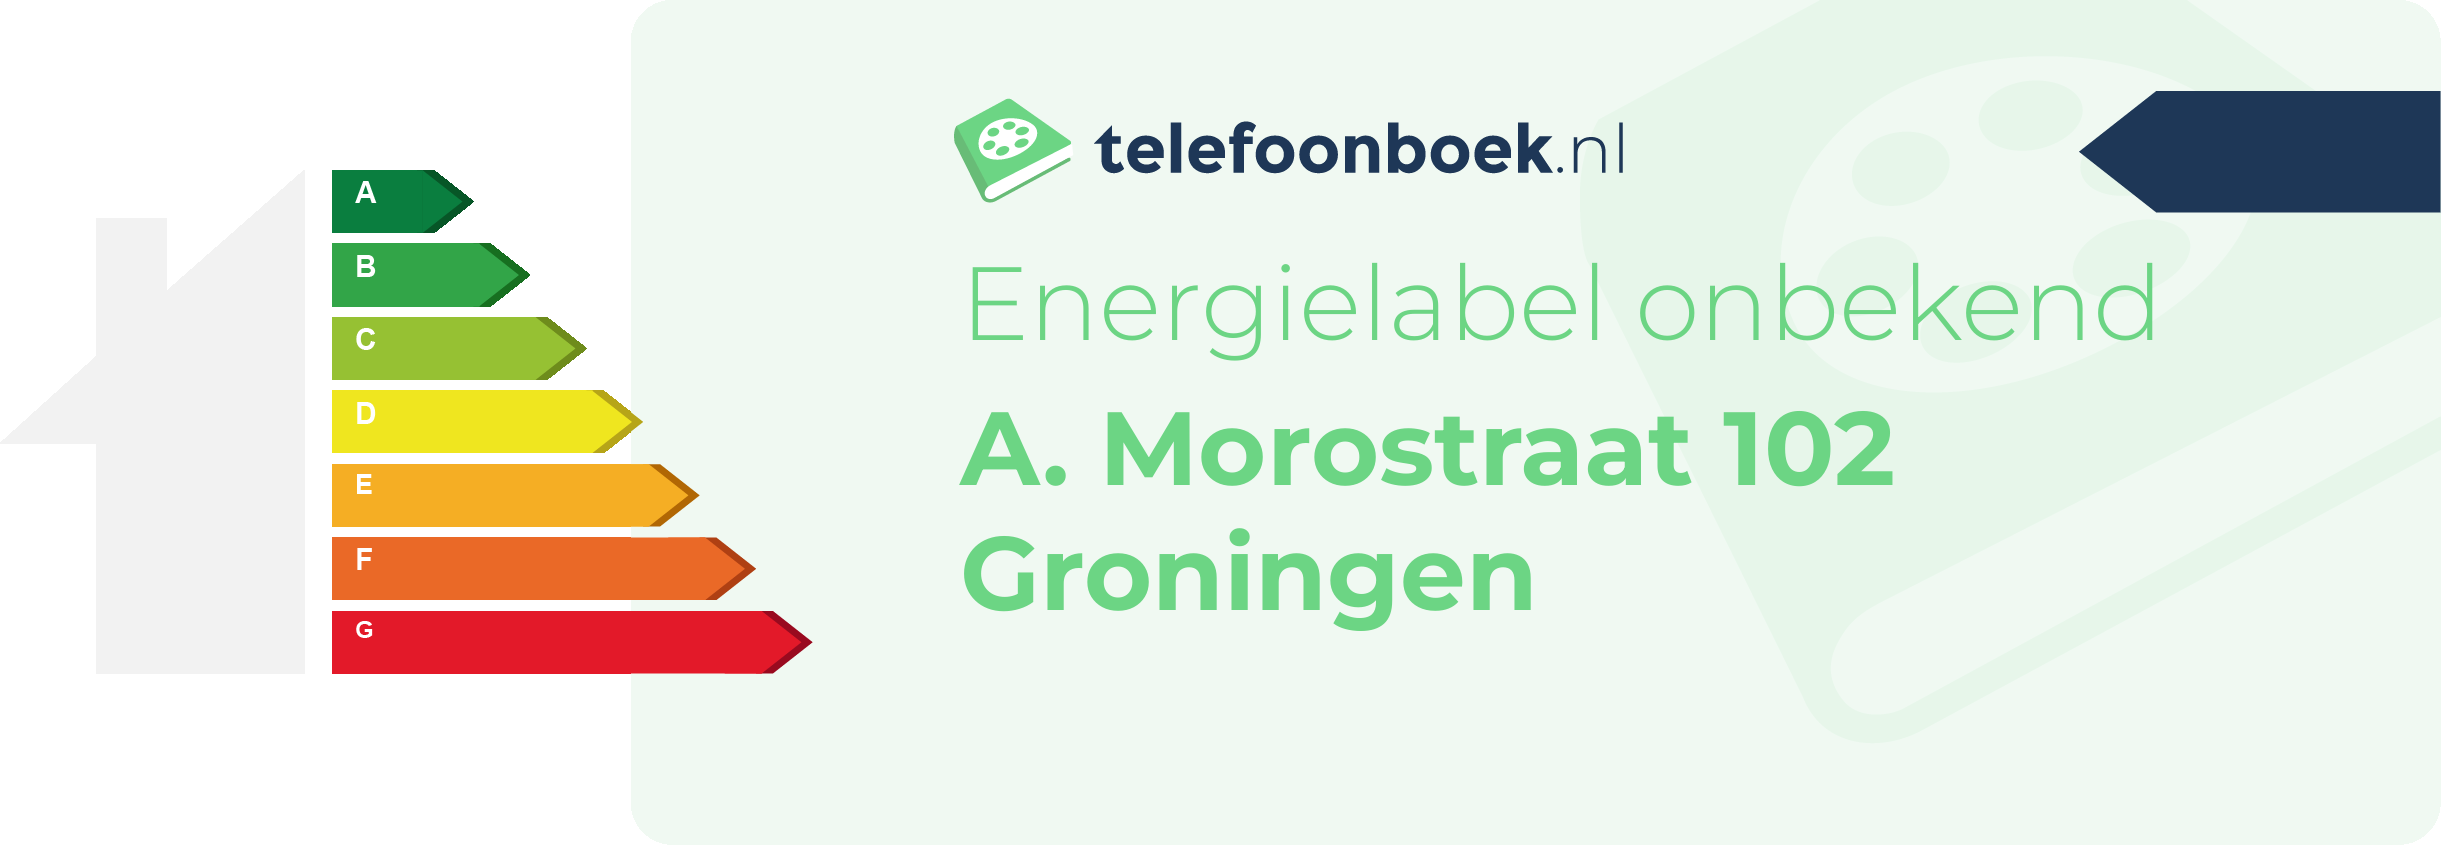 Energielabel A. Morostraat 102 Groningen